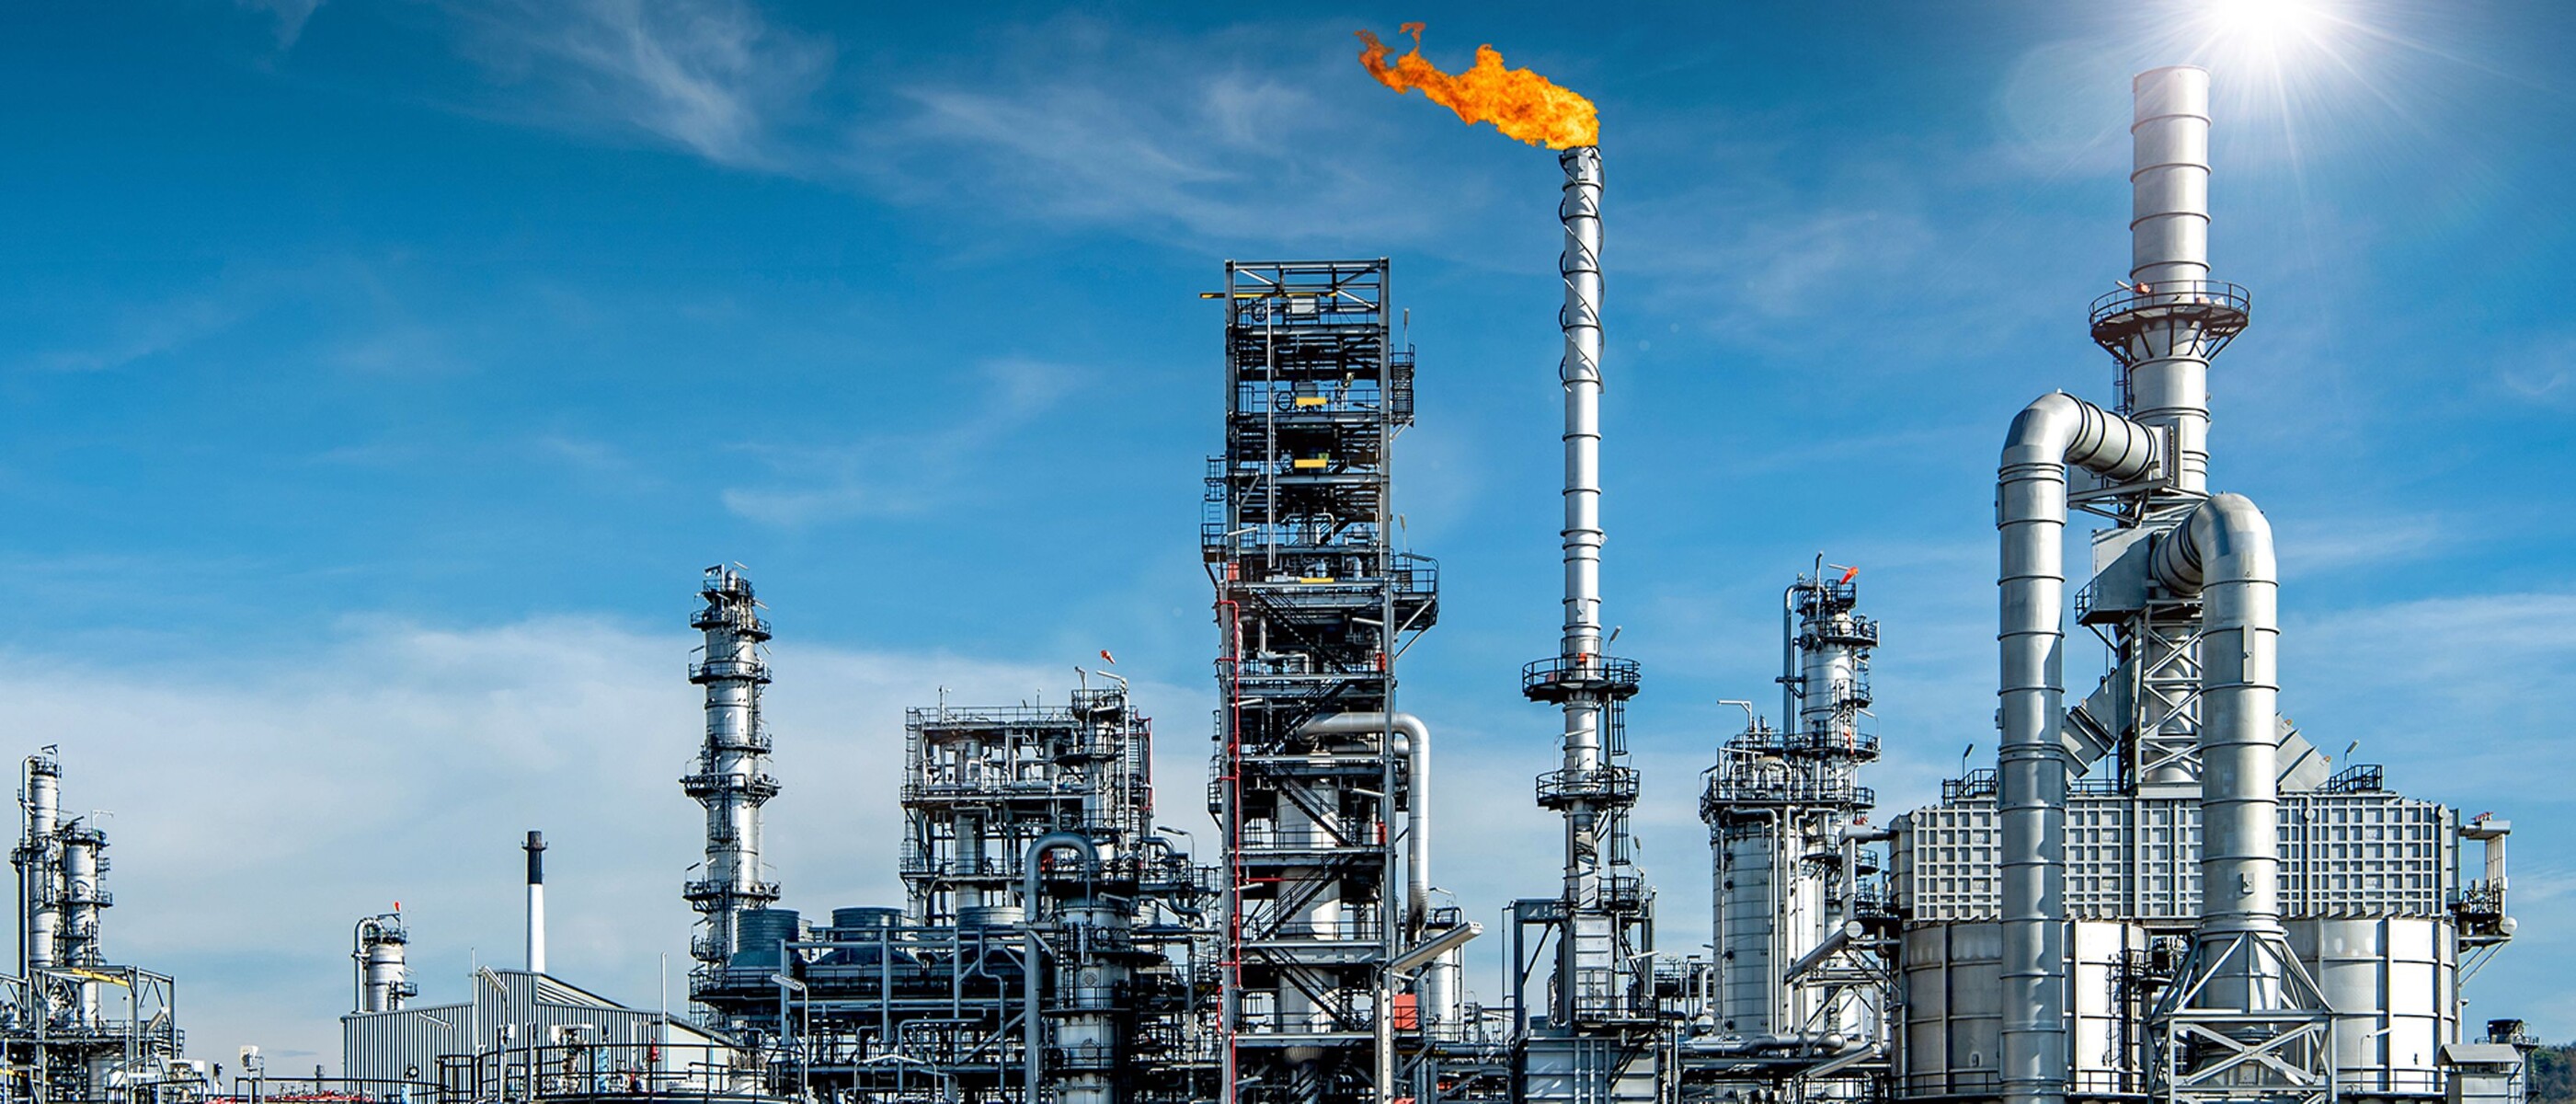 Gran complejo de refinado de petróleo con una llama de combustión naranja en el centro que contrasta con un brillante cielo azul